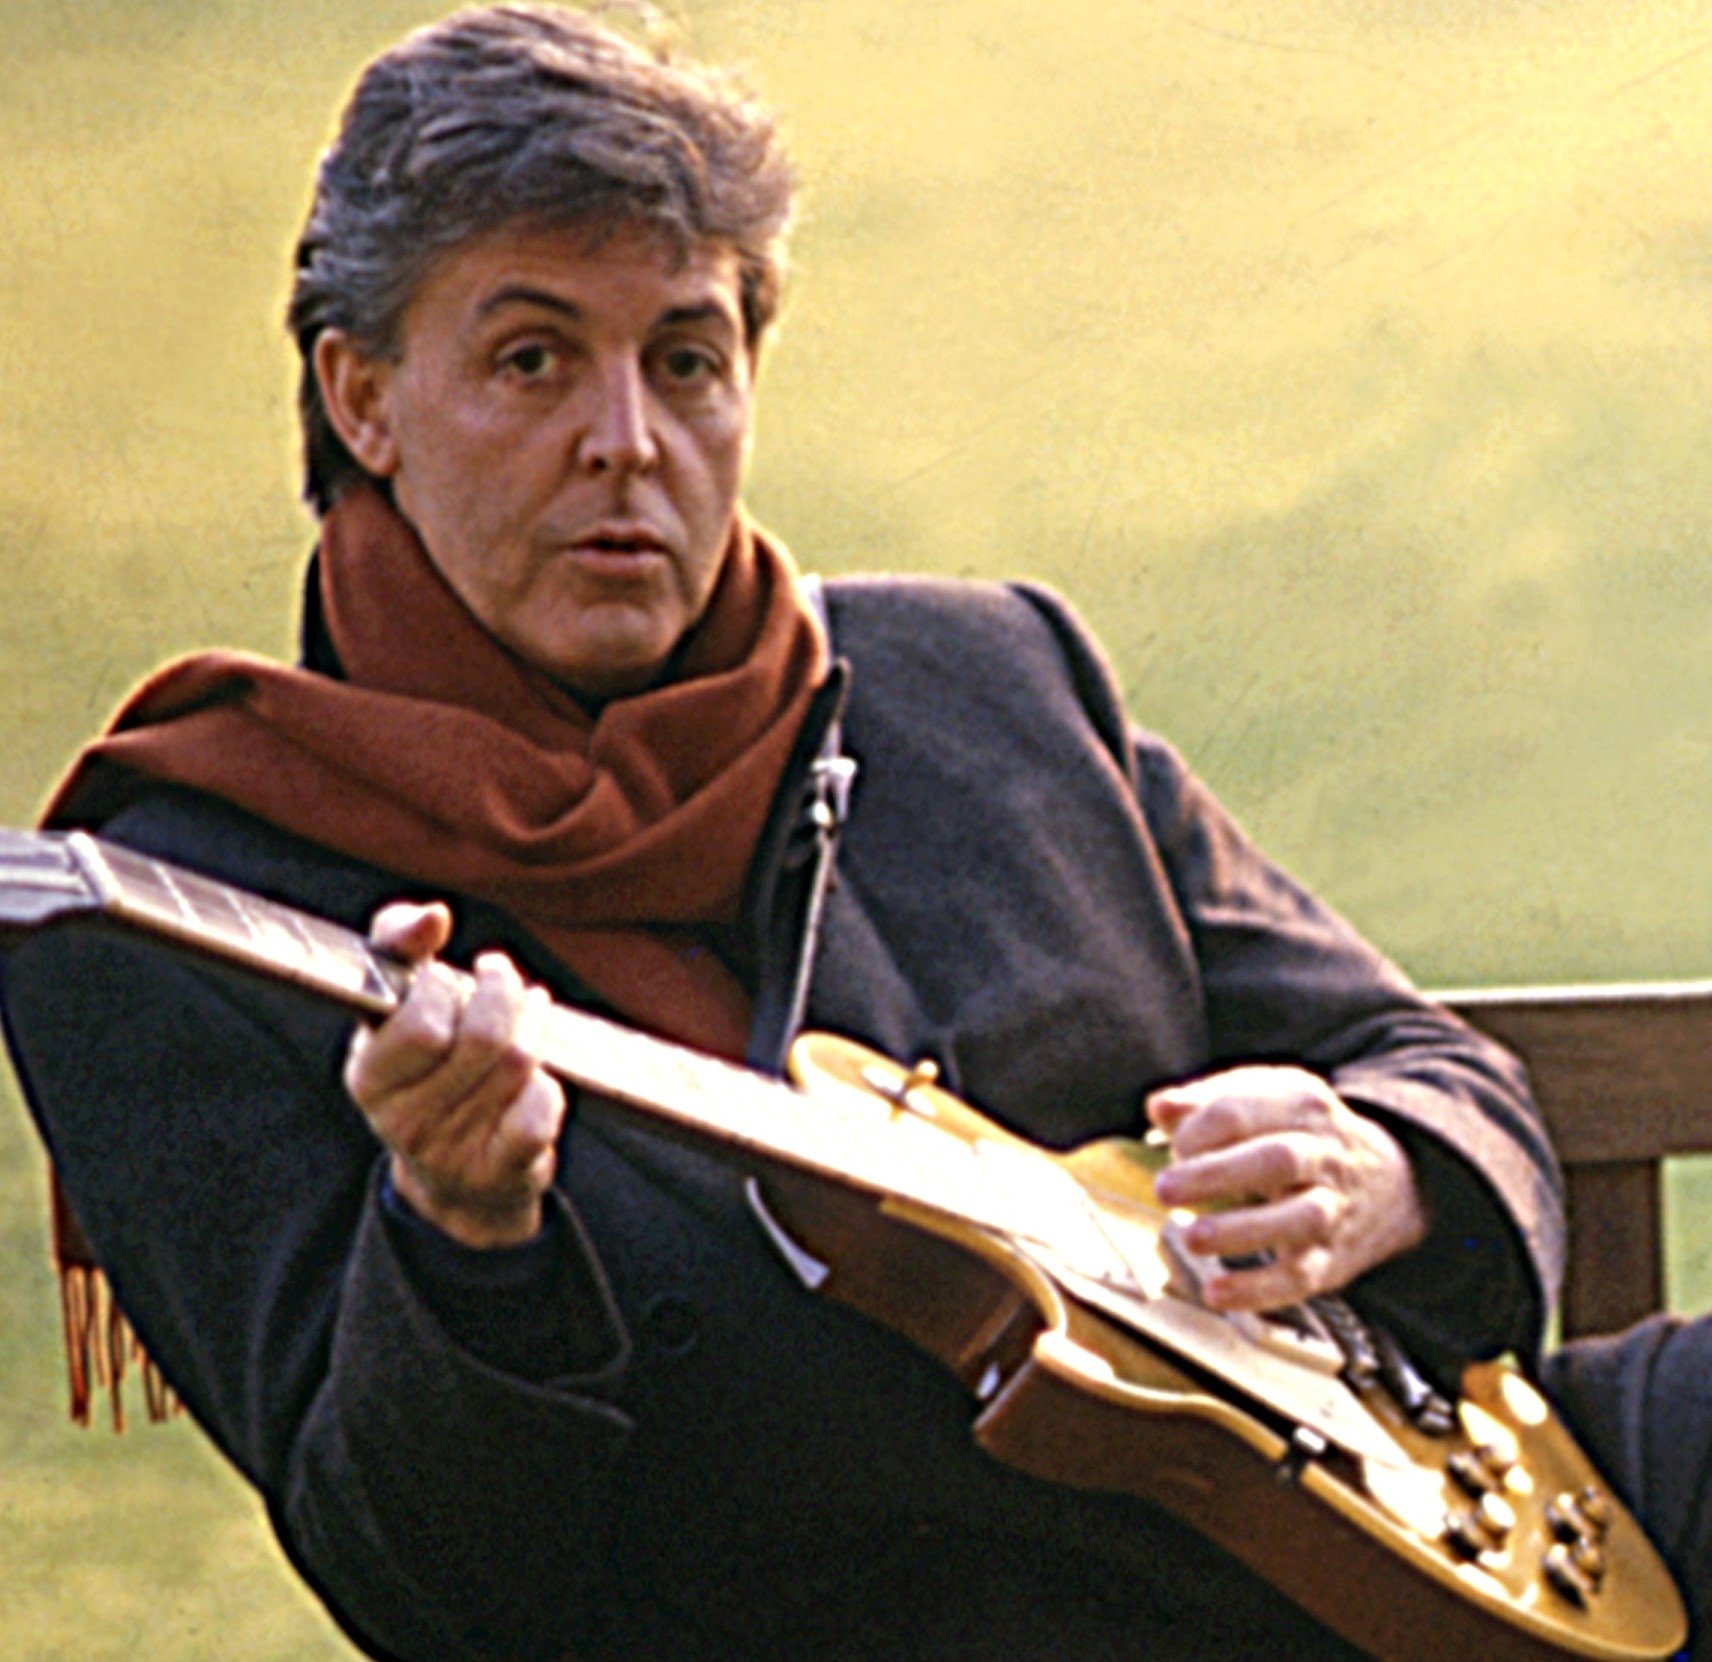 Paul McCartney wearing a scarf